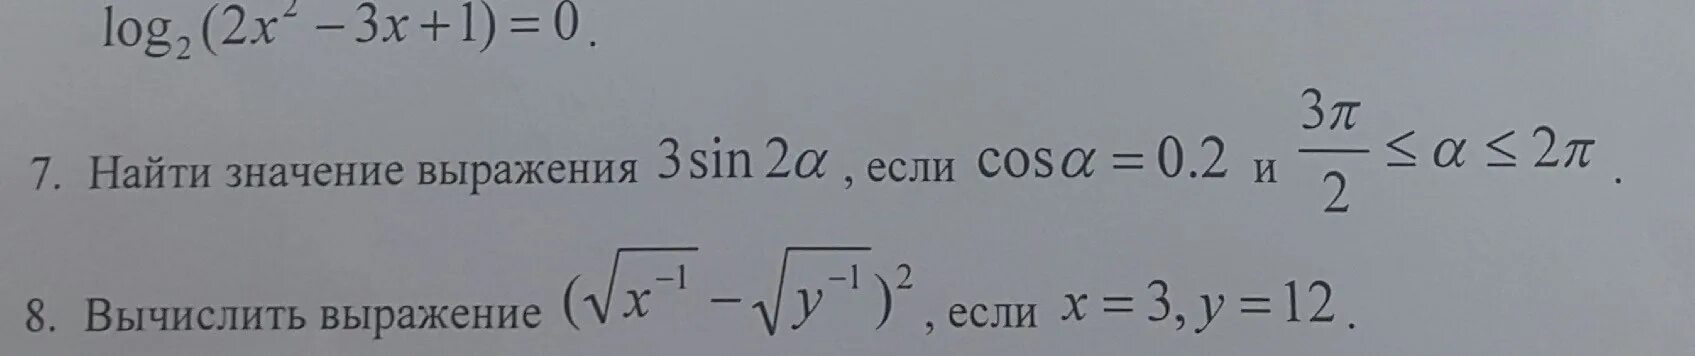 Найдите sin если cos и 0 90. 2cos2a+3sin2, если cosa=0,3. Sin a если cos a -0.8. Найдите sin a если cos a 0 и p<a<2p. Если cos>0 то.